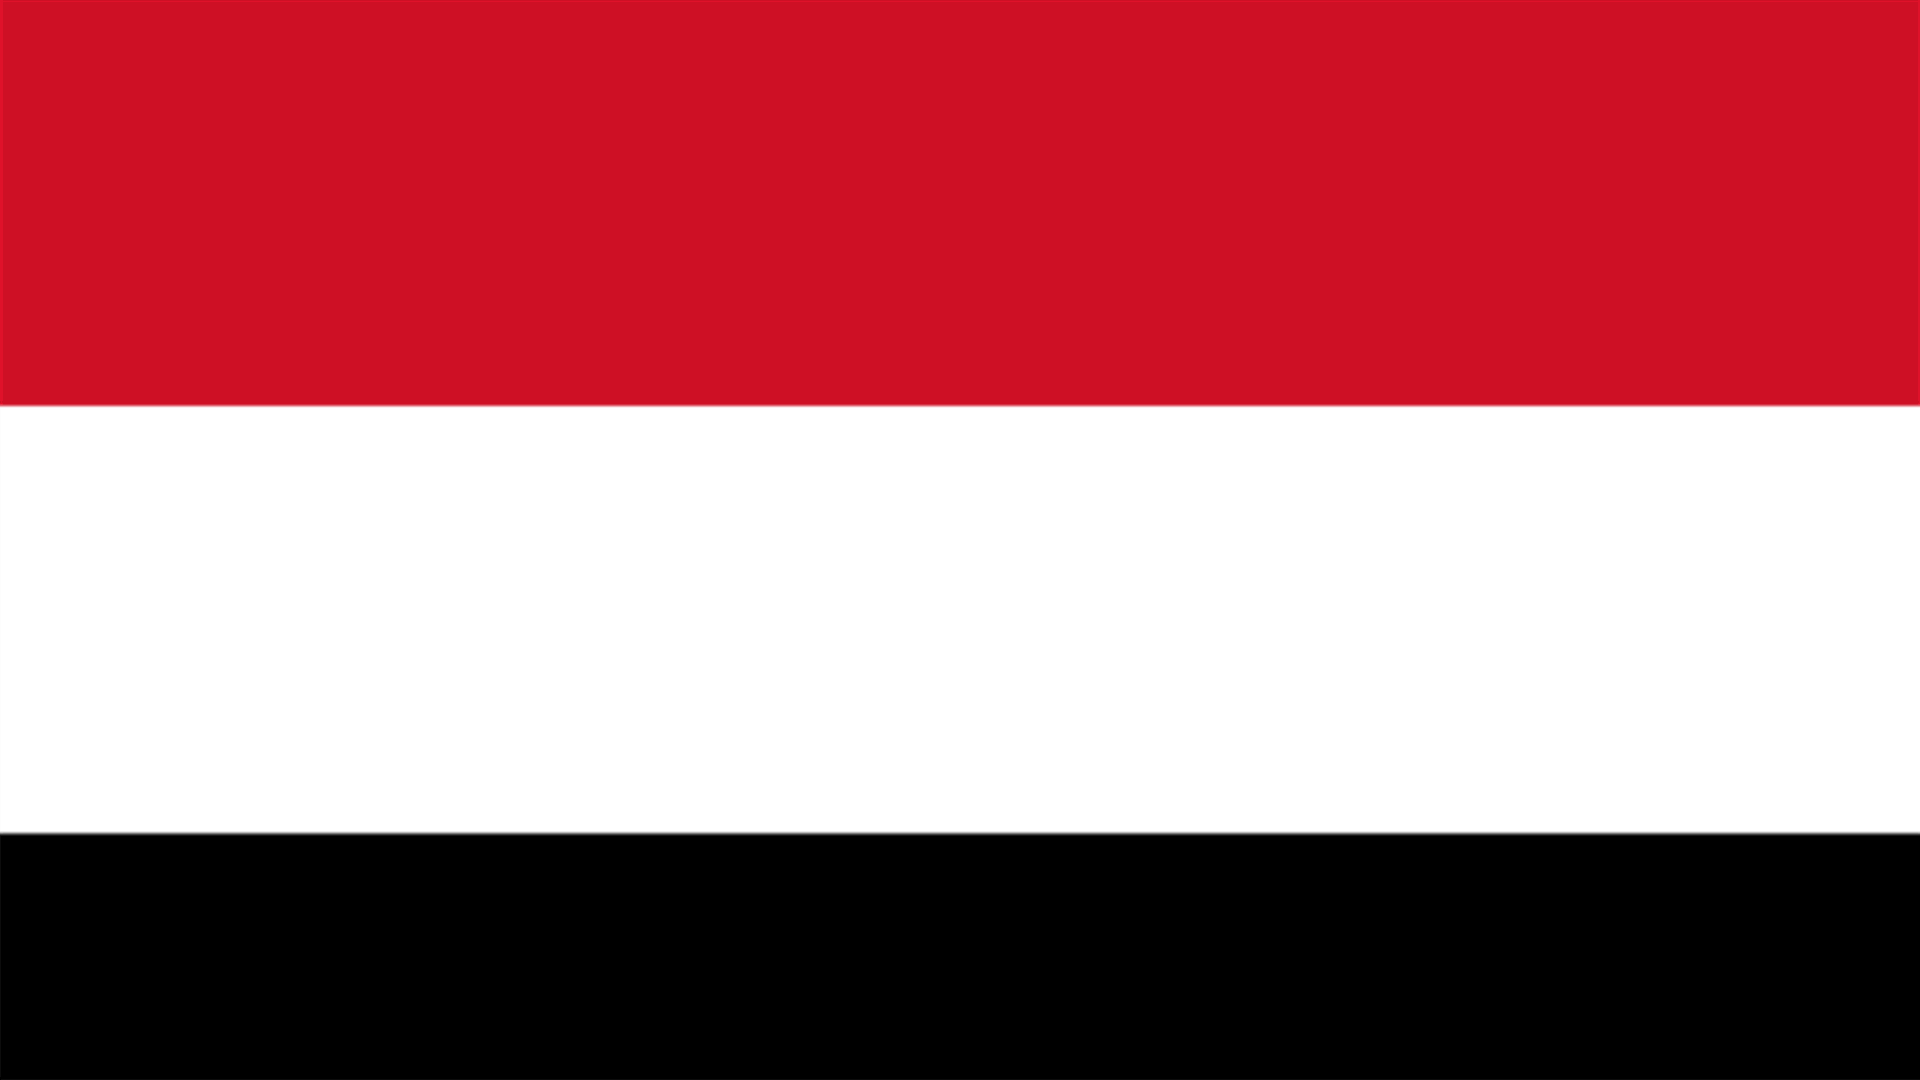 الخارجية اليمنية دعت الحكومة اللبنانية الى توضيح موقفها من تصريحات وزير الاعلام